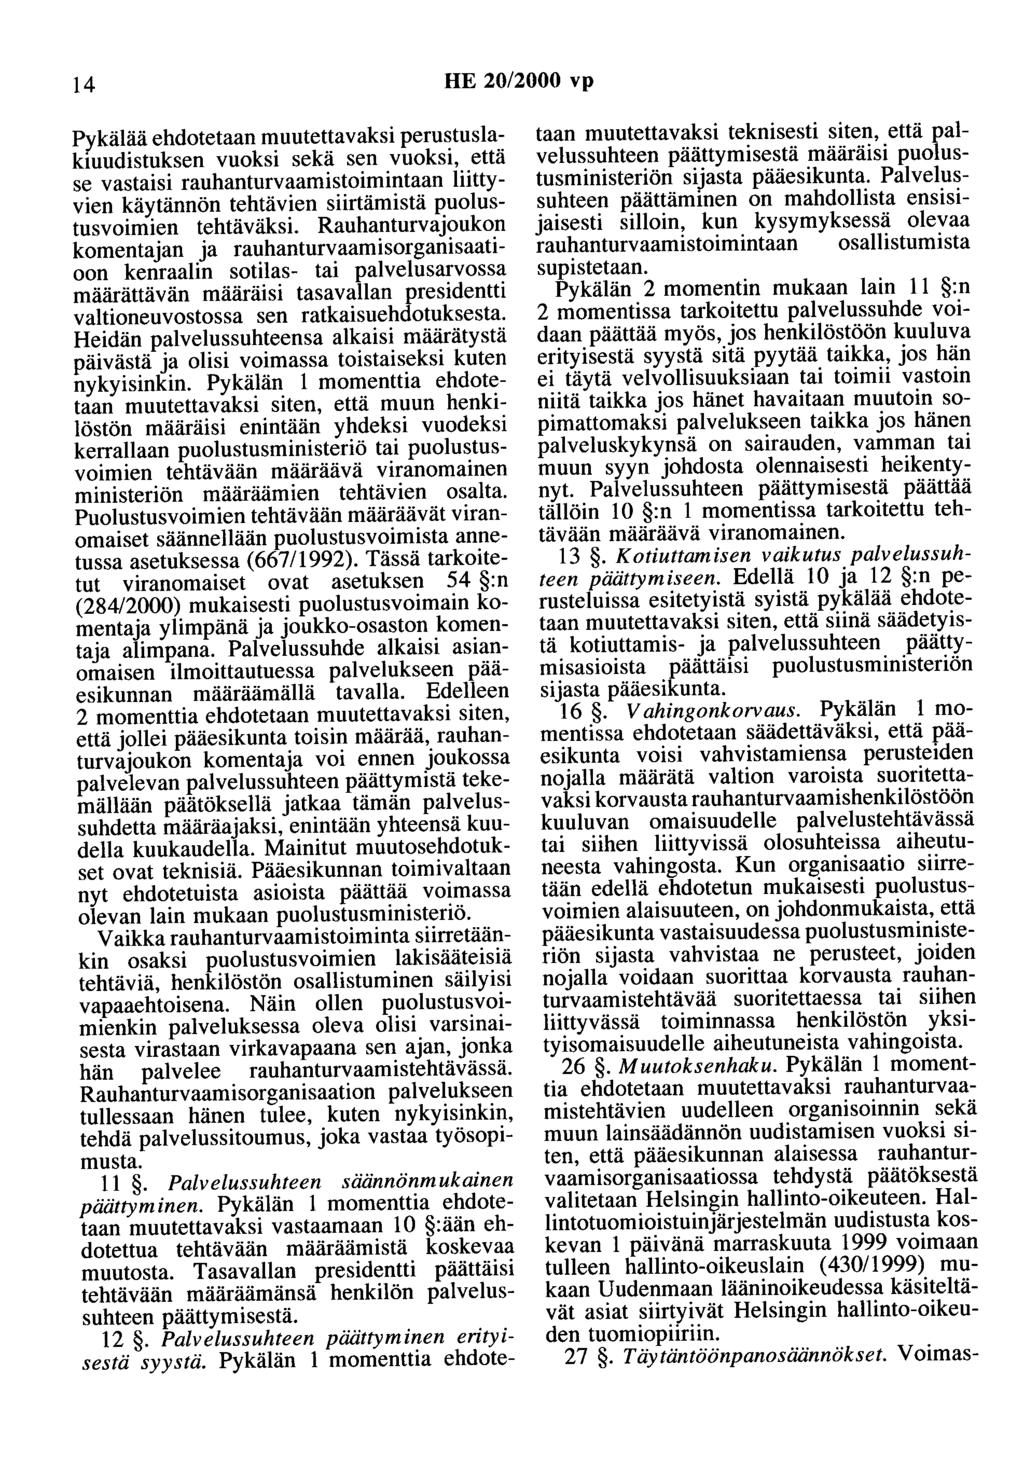 14 HE 20/2000 vp Pykälää ehdotetaan muutettavaksi perustuslakiuudistuksen vuoksi sekä sen vuoksi, että se vastaisi rauhanturvaamistoimintaan liittyvien käytännön tehtävien siirtämistä